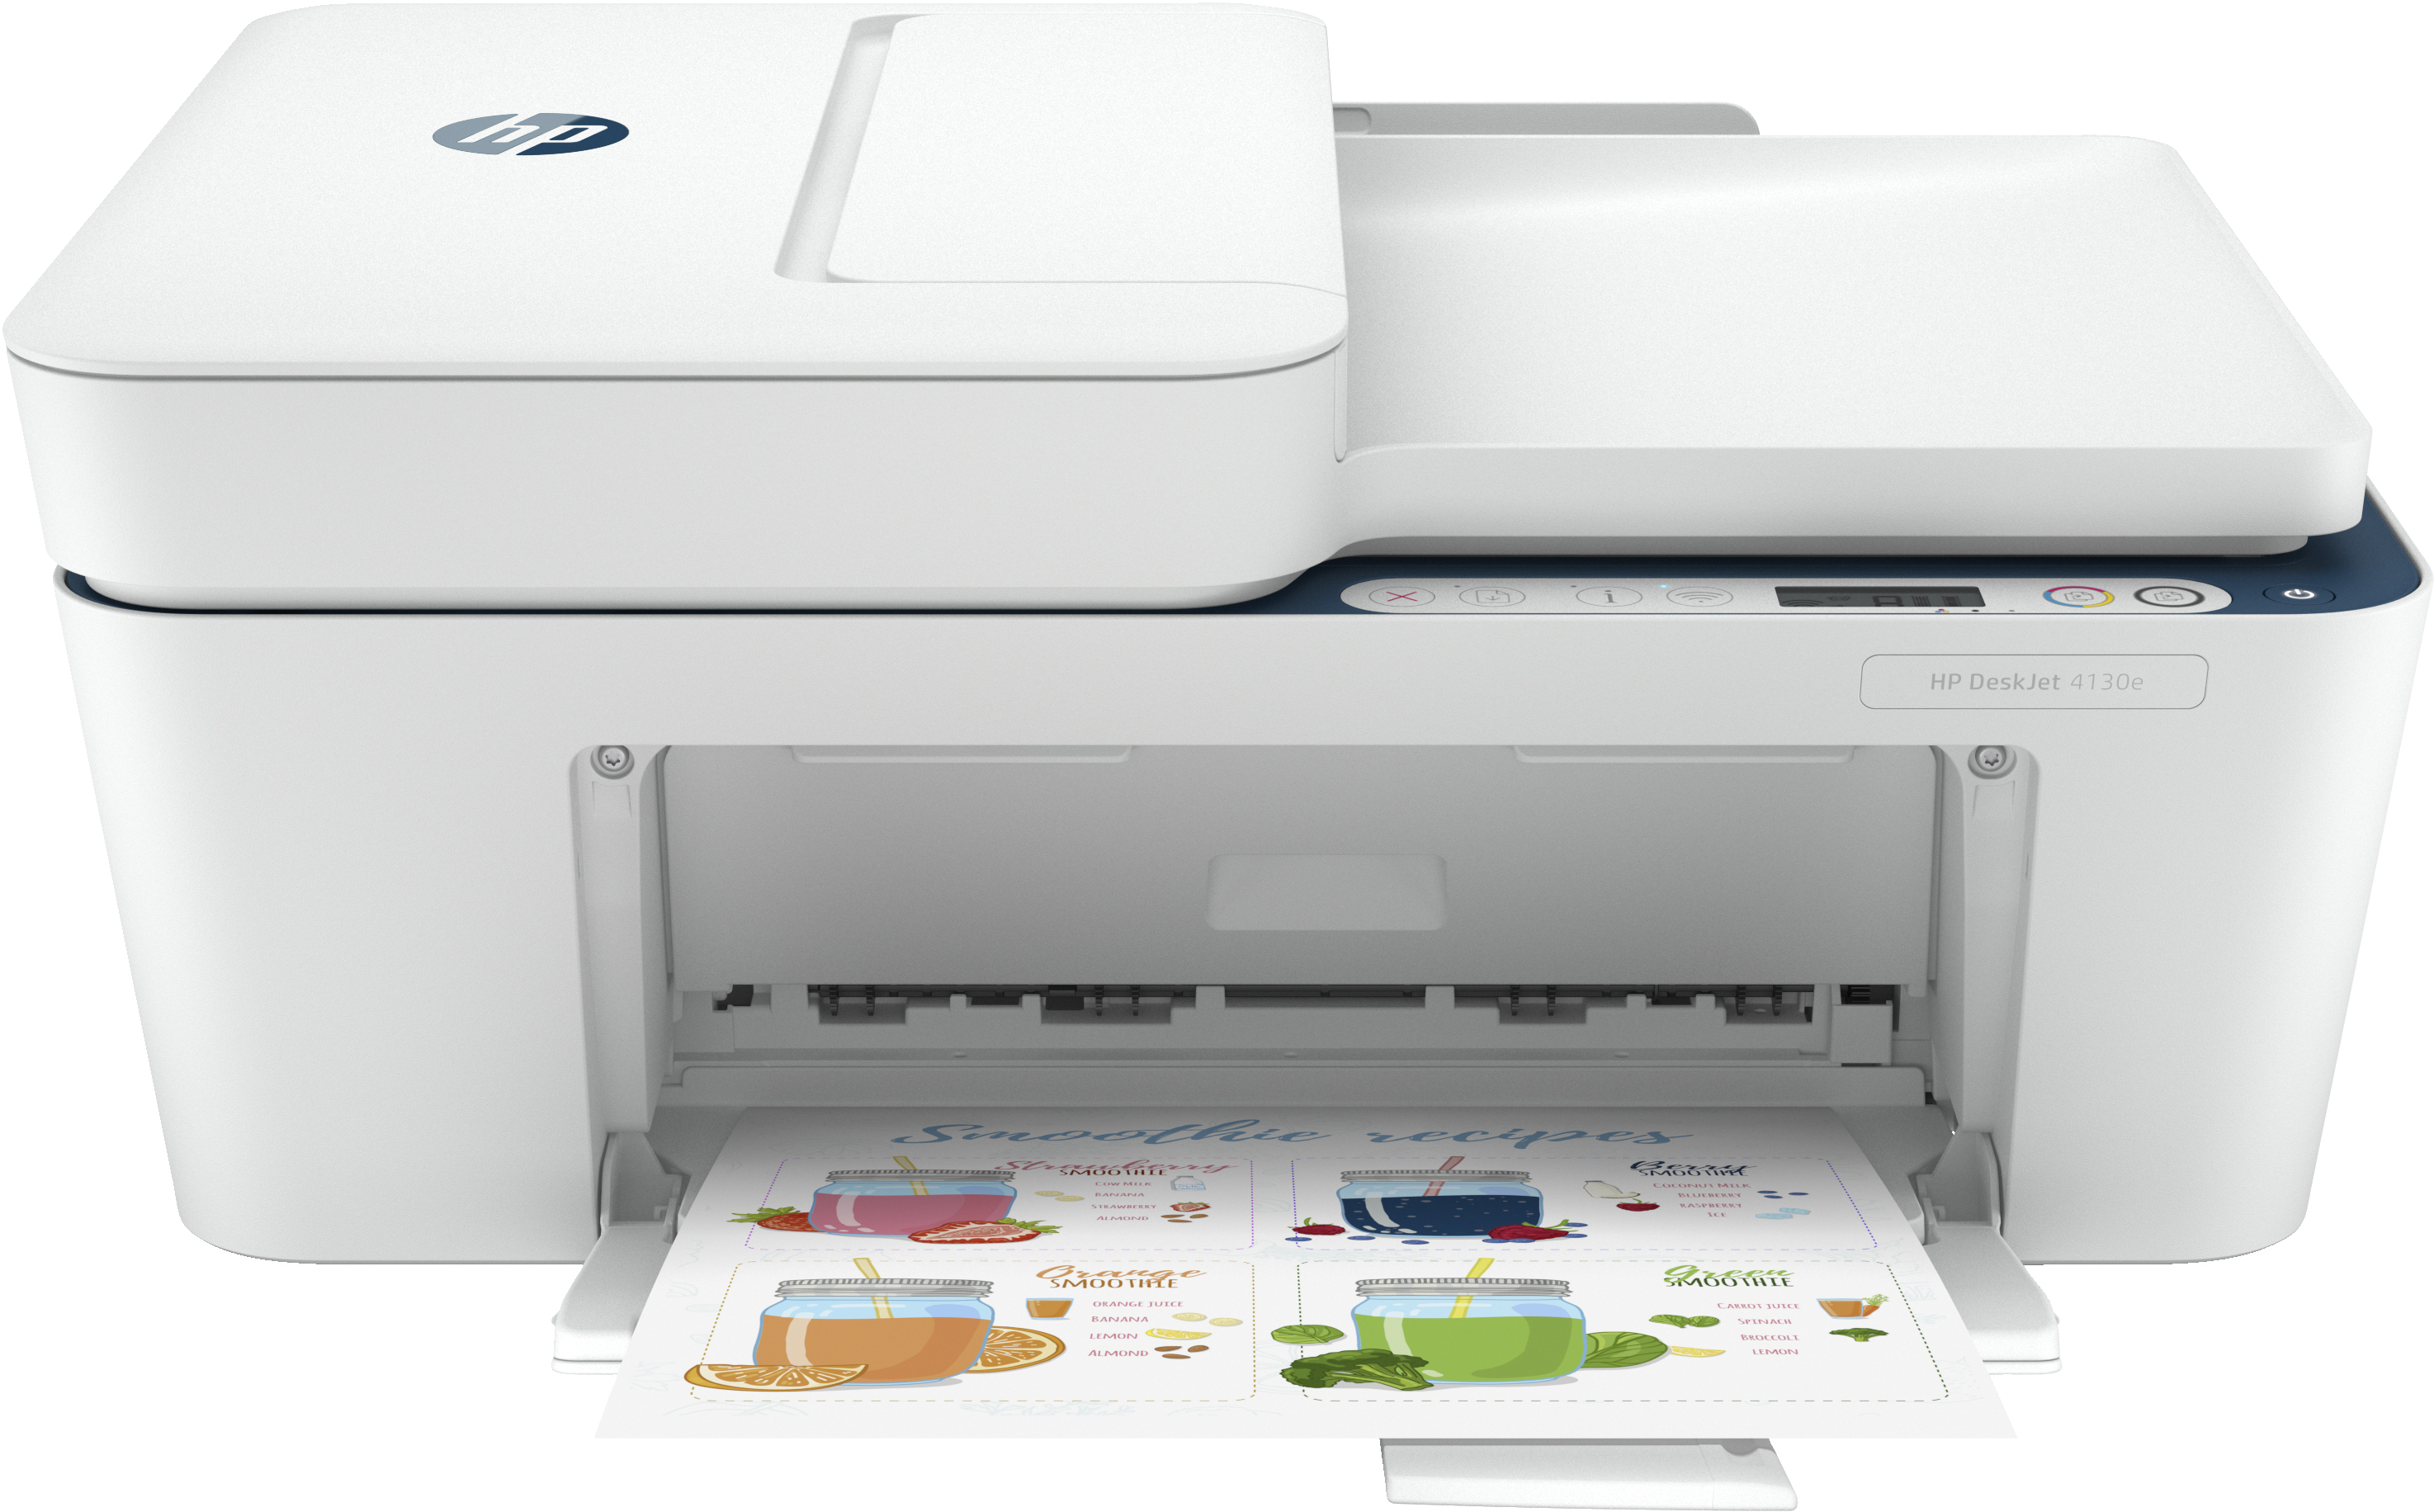 HP Deskjet 4130e All-in-One printer